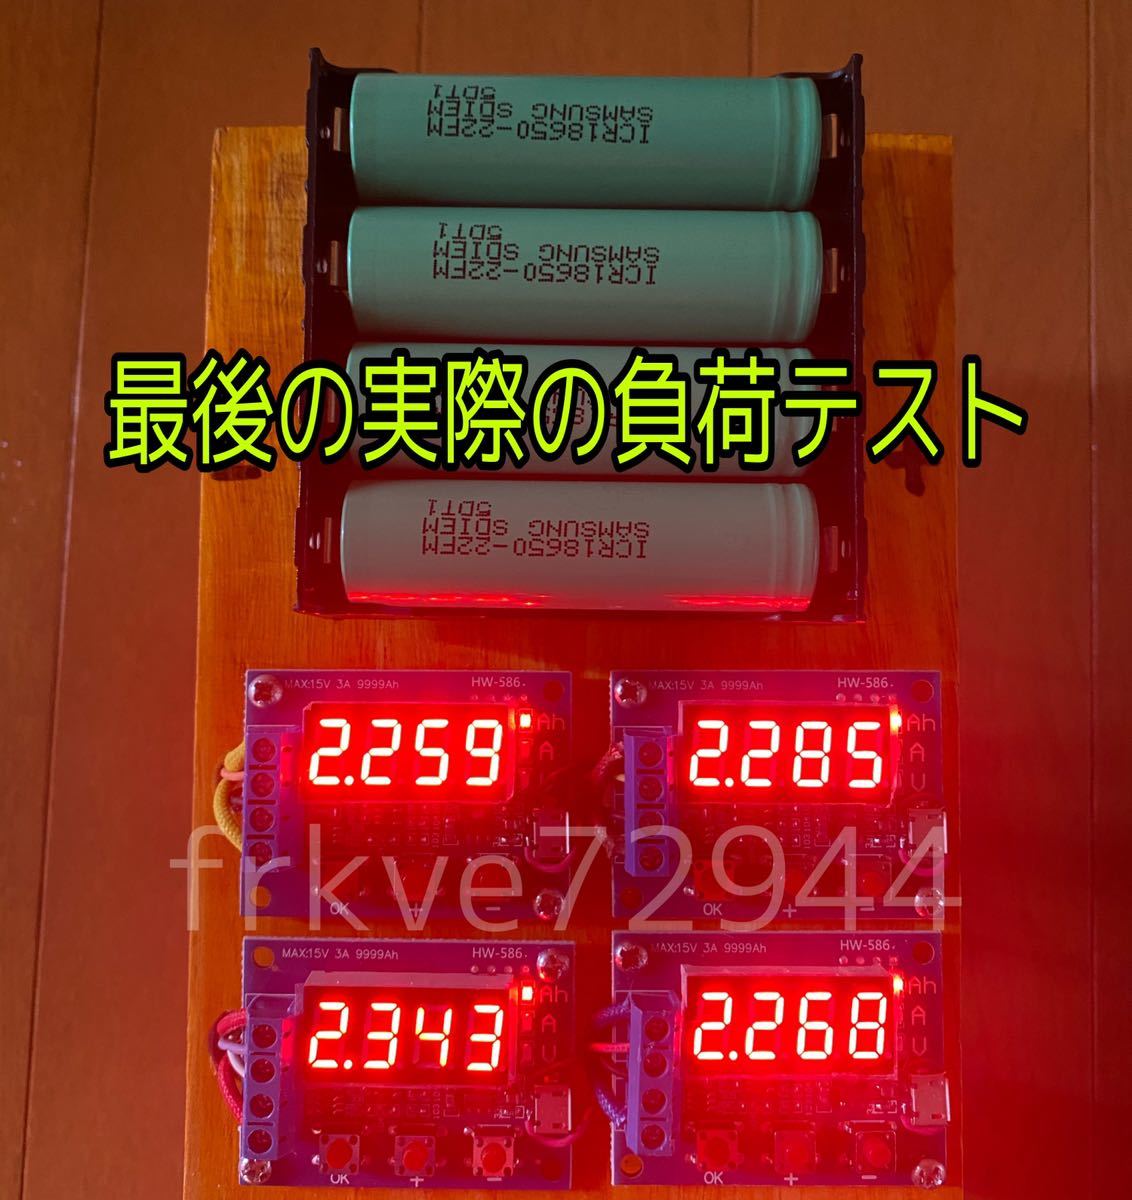 リチウムイオン電池 9本 SAMSUNG製 ICR18650-22F 2200mAh 日本人気超絶の